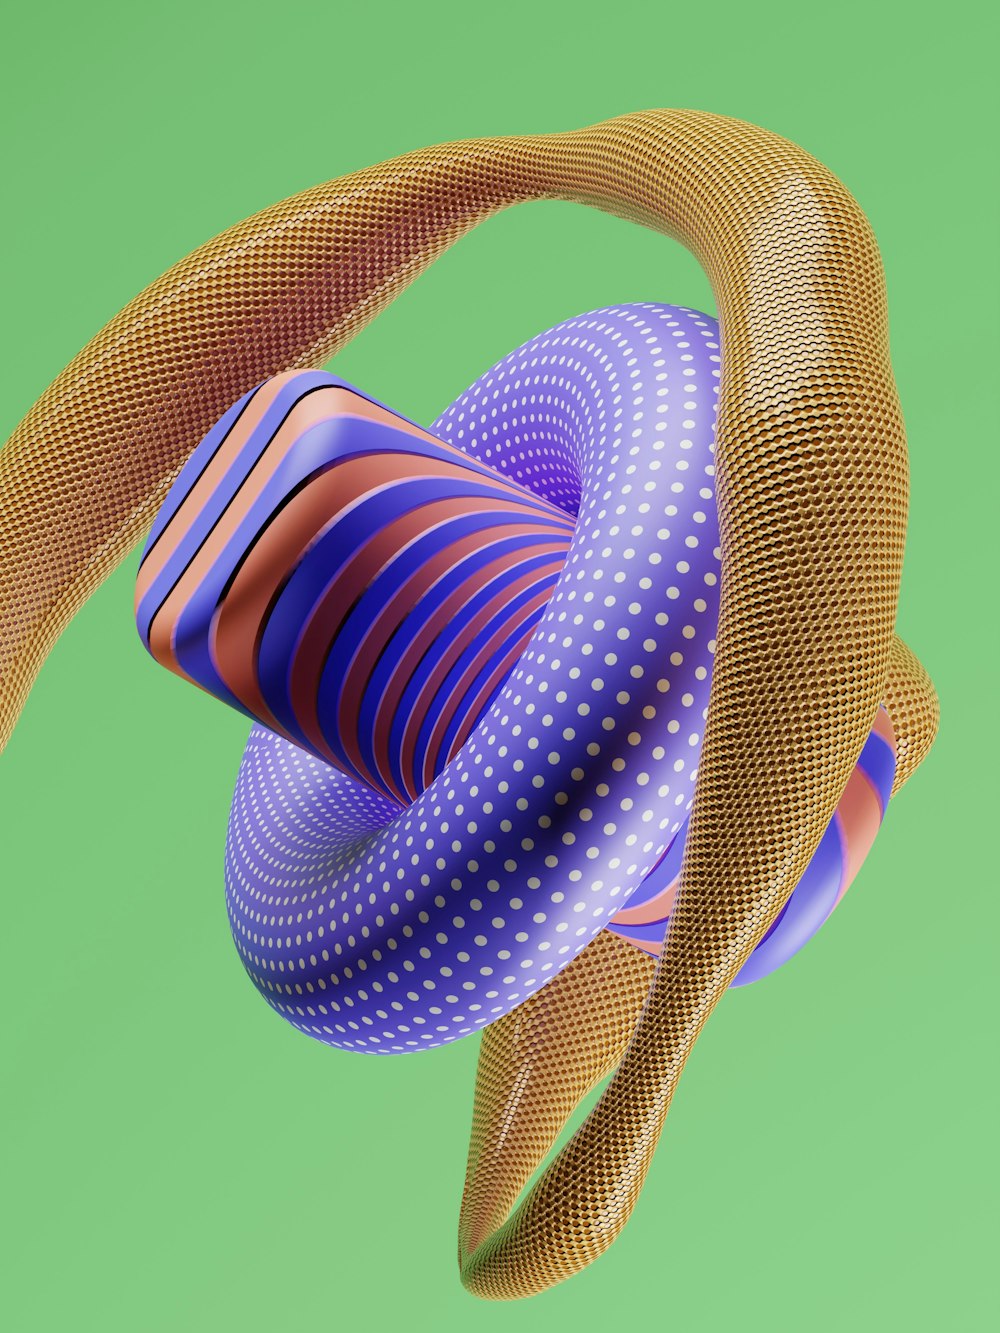 Una imagen generada por computadora de un objeto colorido